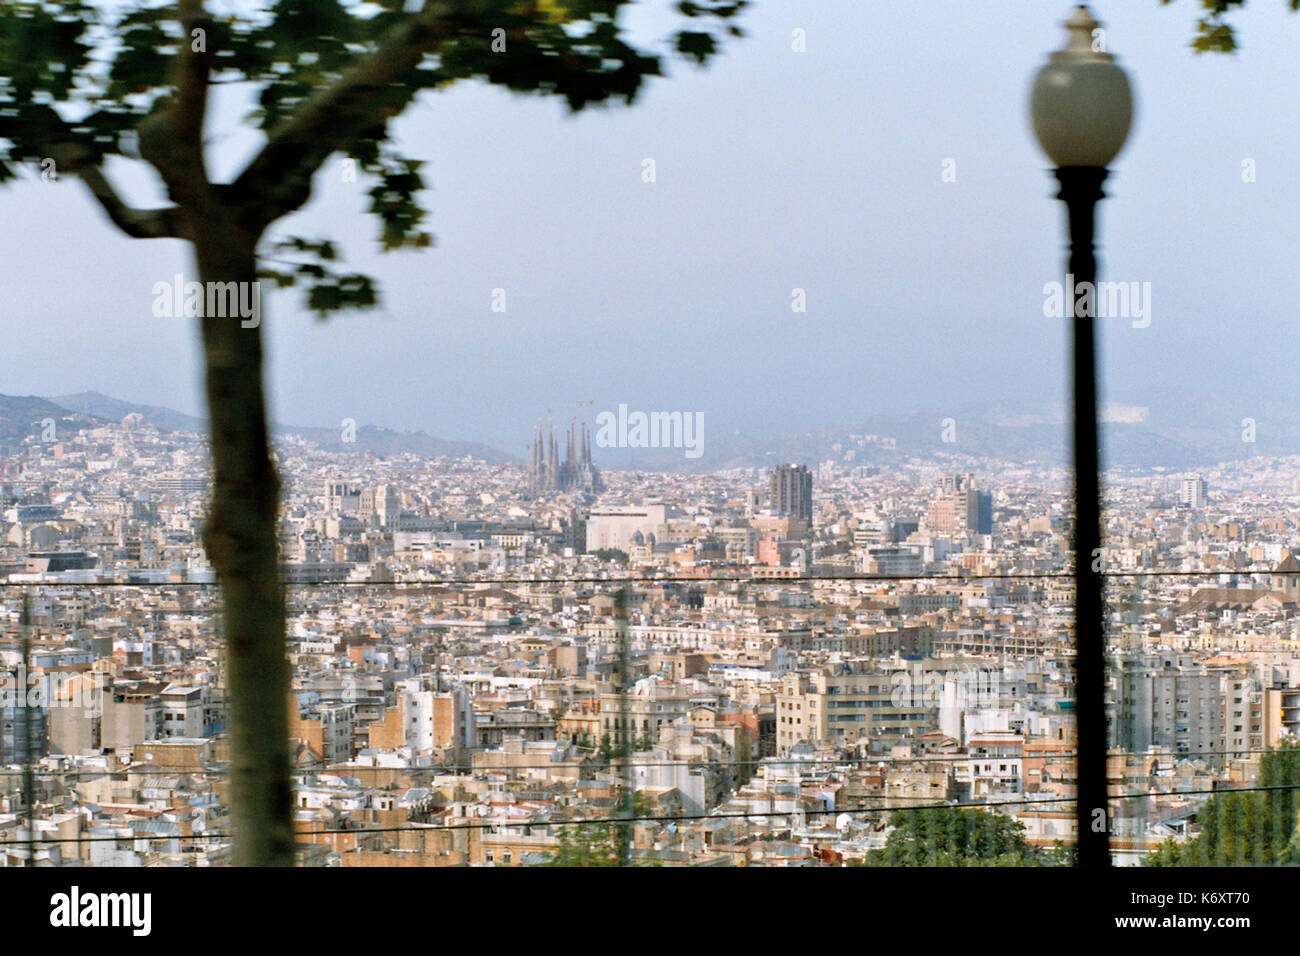 Barcellona, Spagna. Barcellona (/bɑːrsəˈloʊnə/, catalano: [bəɾsəˈlonə]) è la capitale e la città più grande della Catalogna, una delle comunità autonome in Spagna, ed il paese è la seconda più popolosa del comune, con una popolazione di 1.6 milioni di euro entro i limiti della città. La sua area urbana si estende oltre la città amministrativa limiti con una popolazione di circa 4,7 milioni di persone, essendo il sesto più popolosa area urbana nell'Unione europea dopo Parigi, Londra, Madrid, la zona della Ruhr e Milano. è la più grande metropoli sul mare mediterraneo, situato sulla costa tra le foci dei fiumi llobregat un Foto Stock